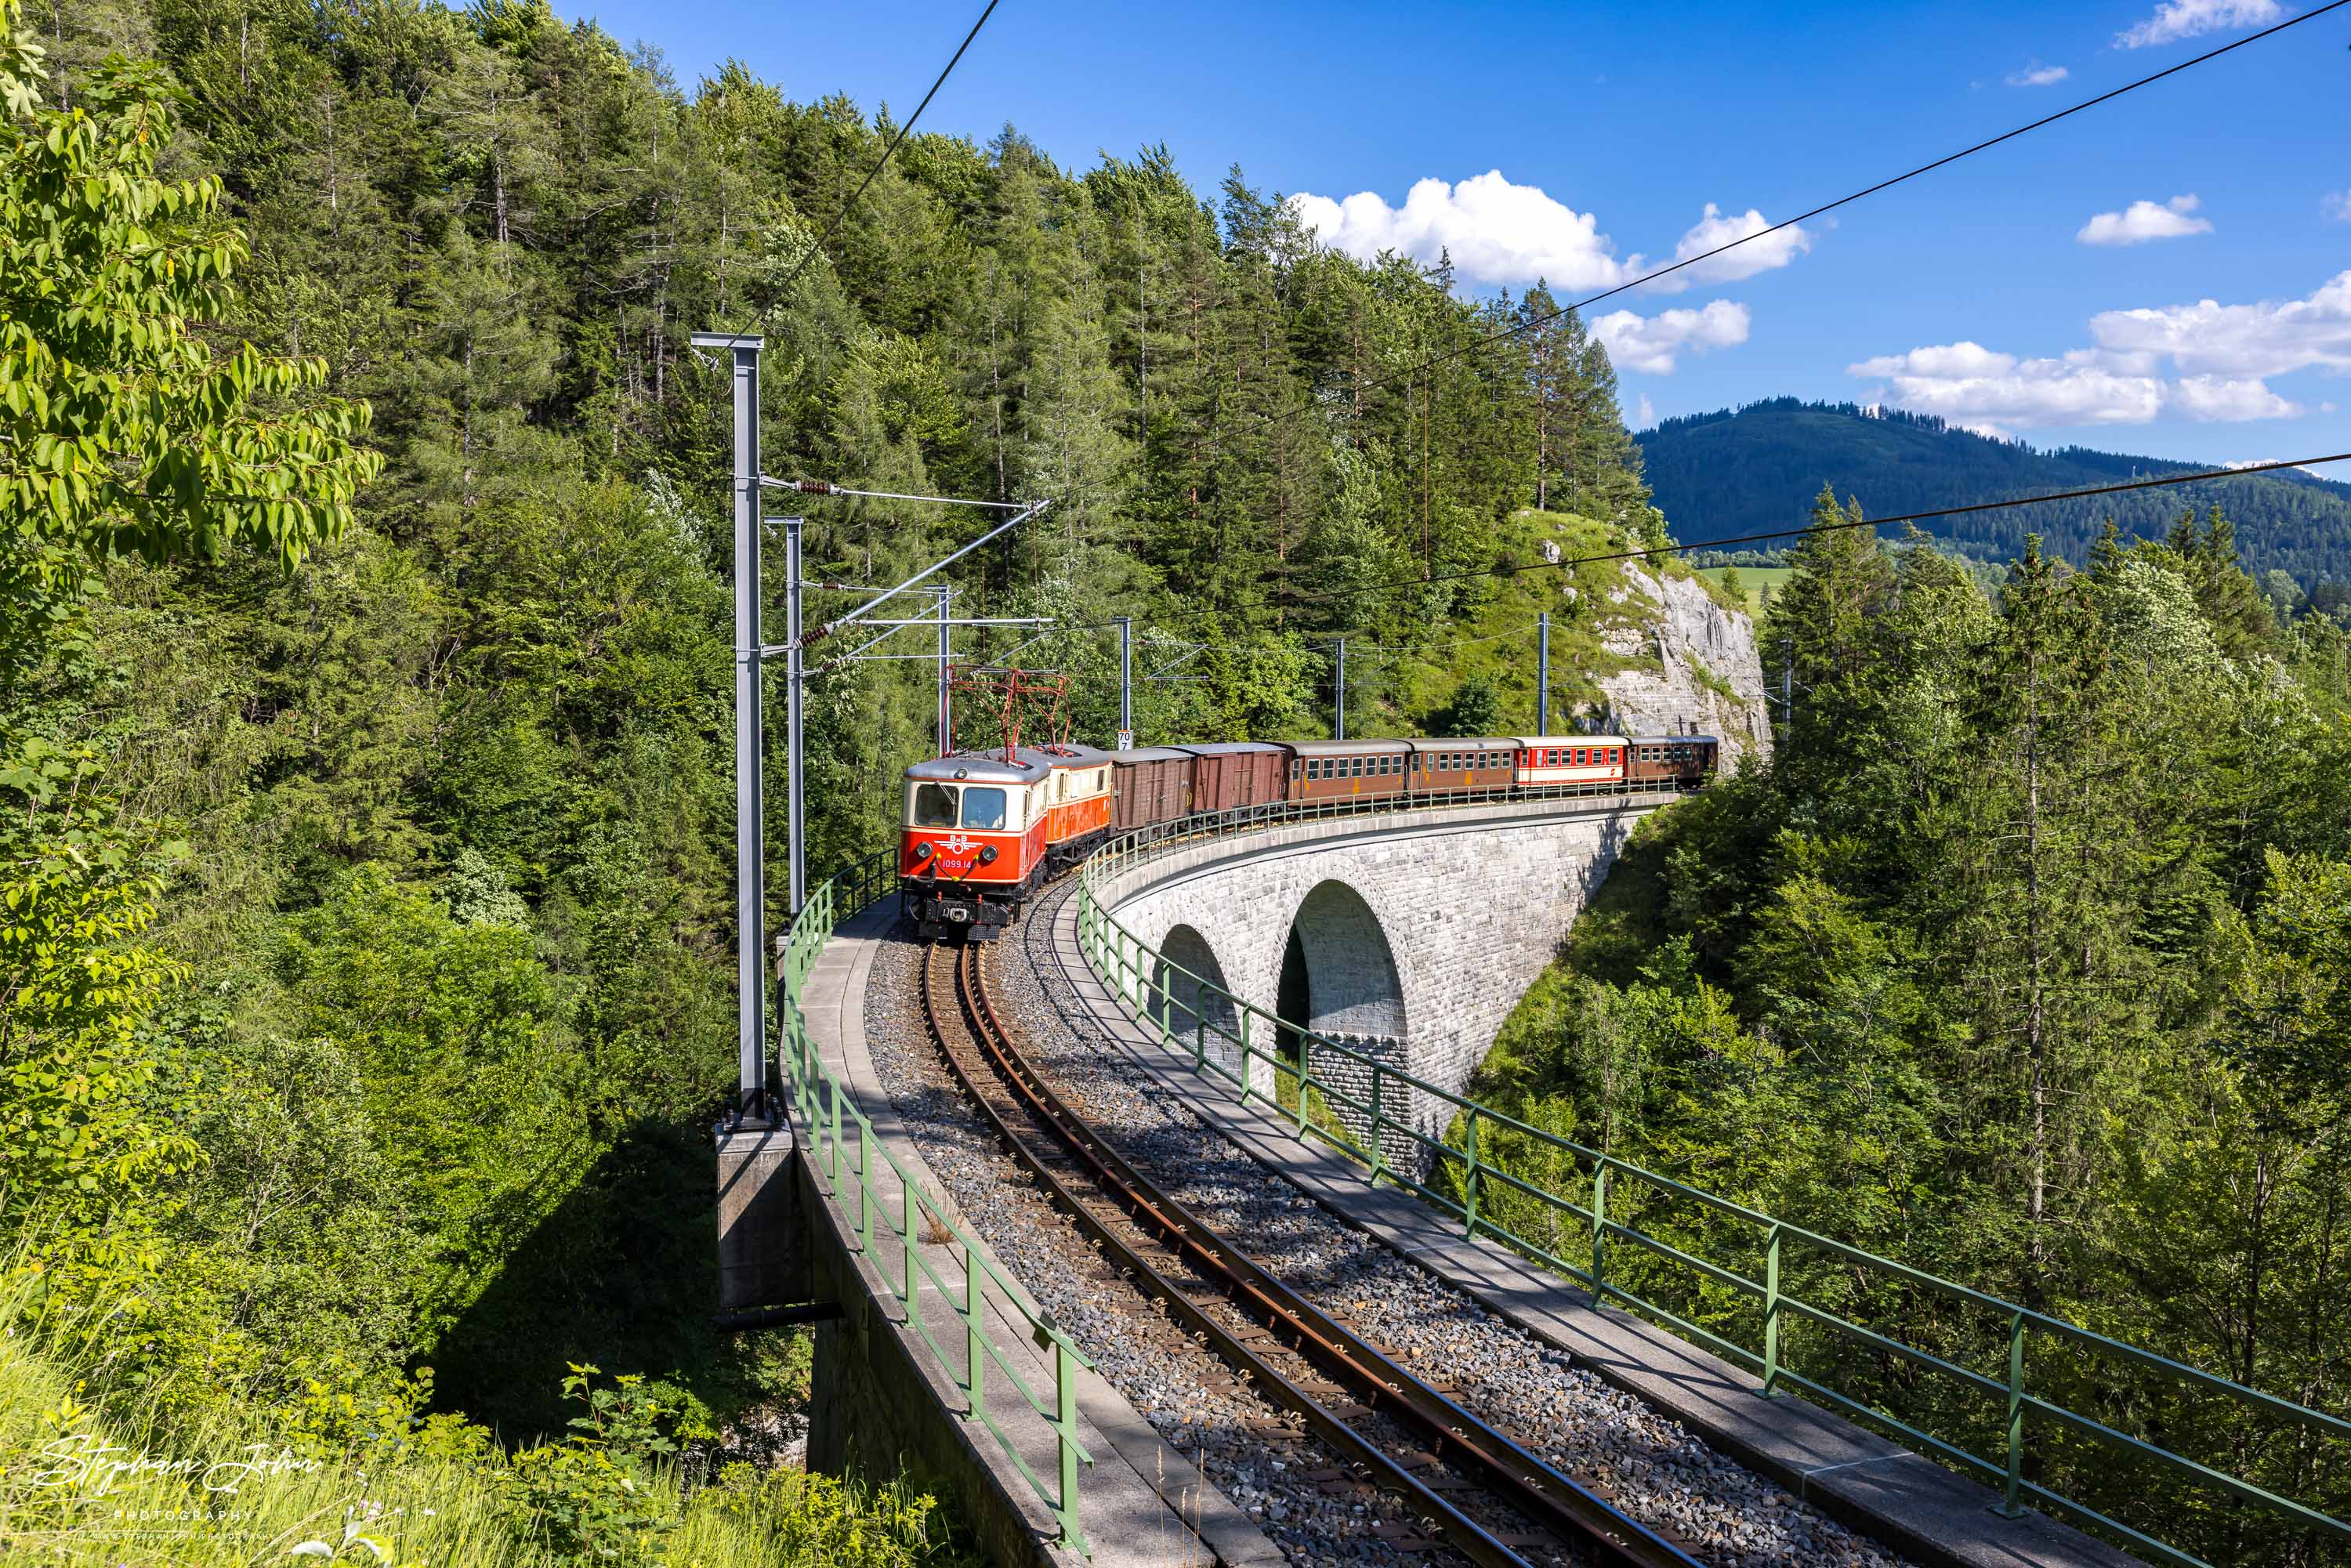 Zug 80966 mit Lok 1099.14 und 1099.11 überquert den Saugrabenviadukt